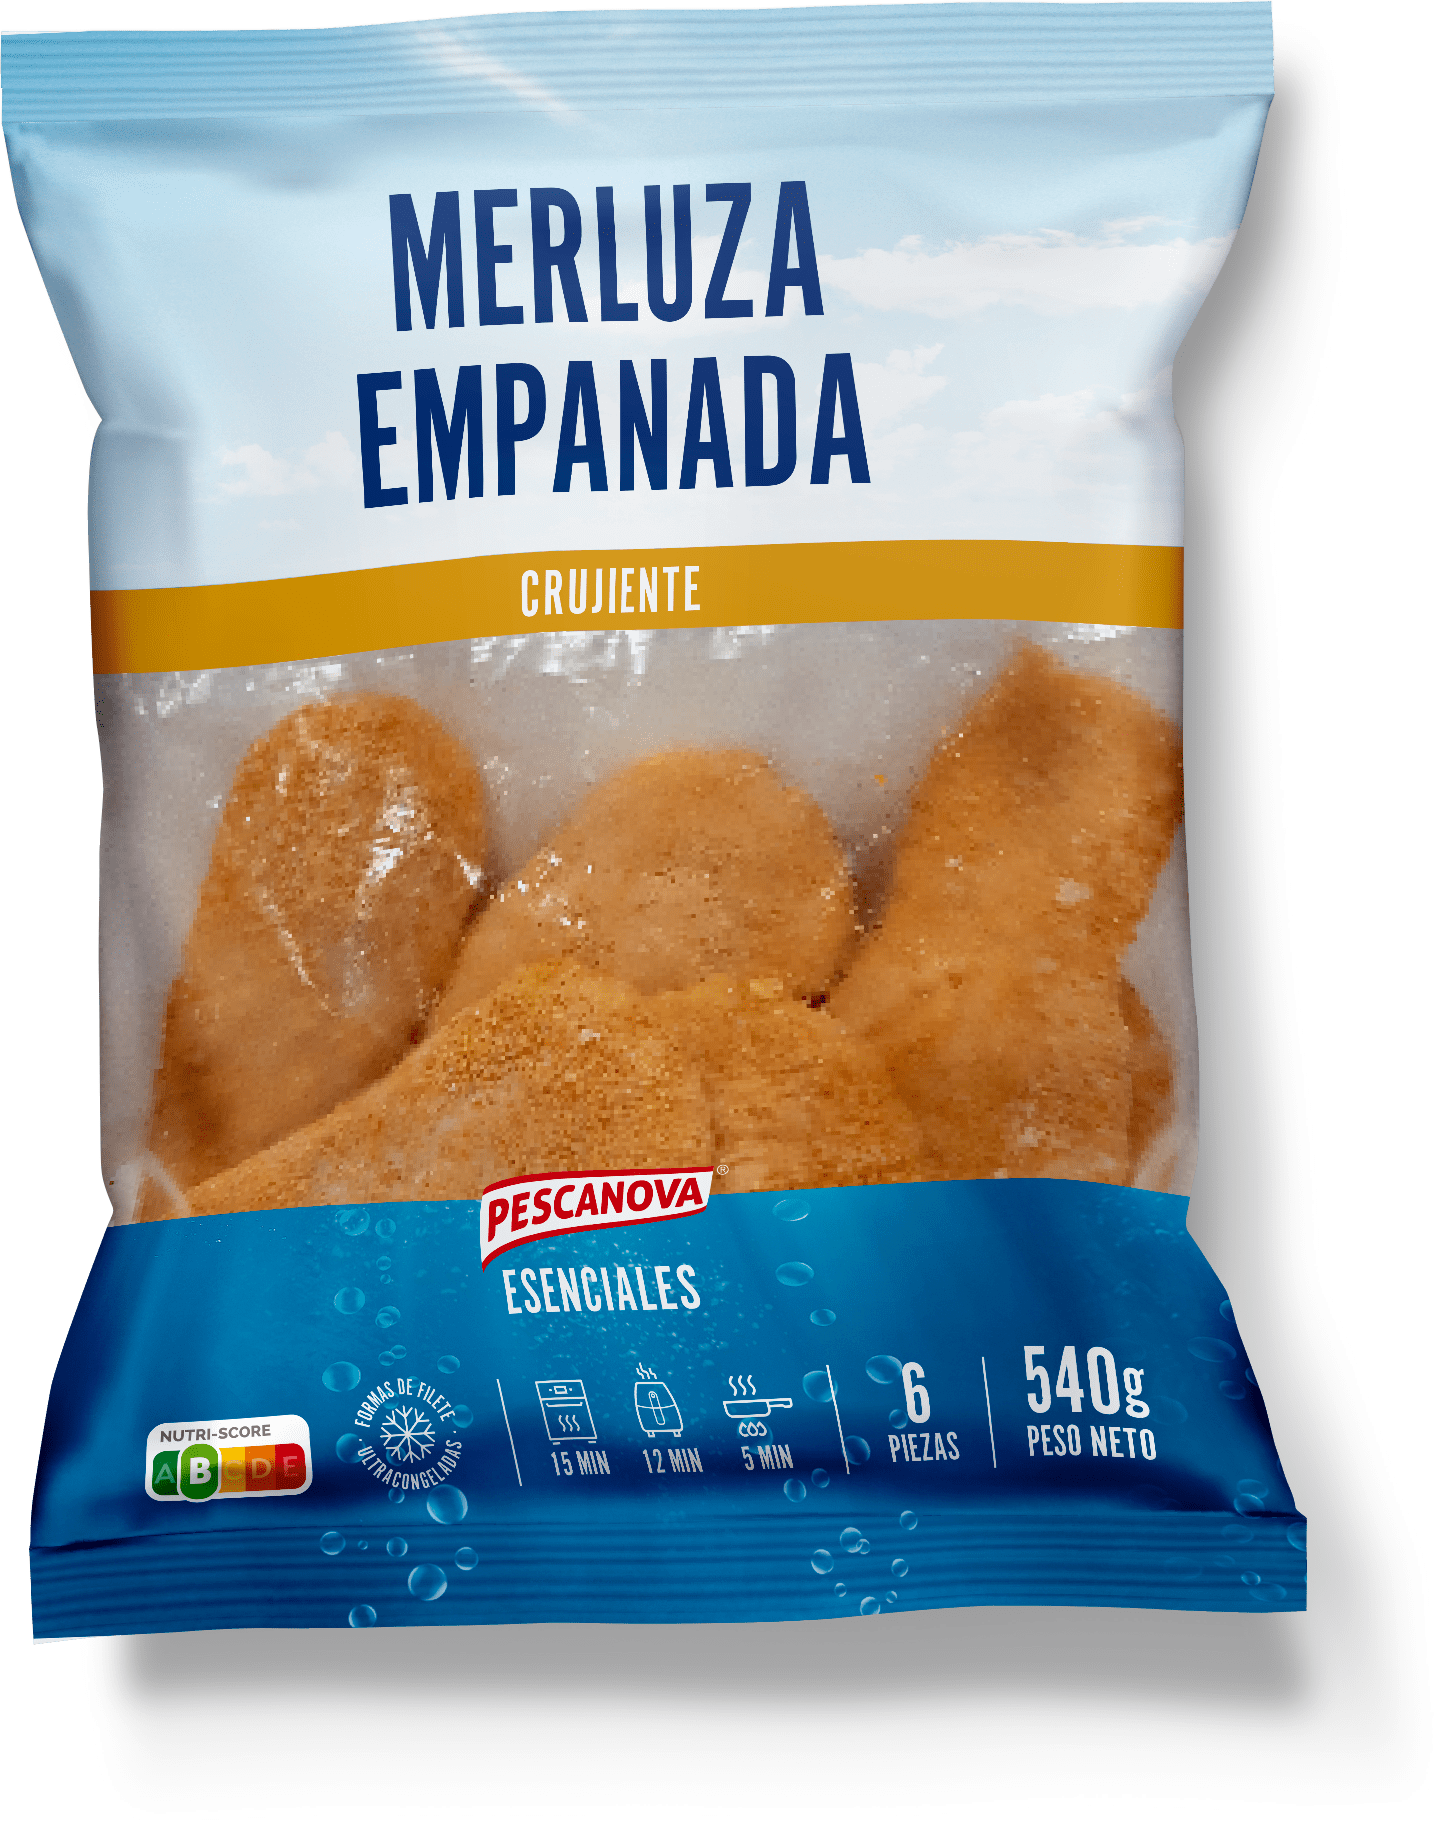 Merluza empanada 540g – Esenciales